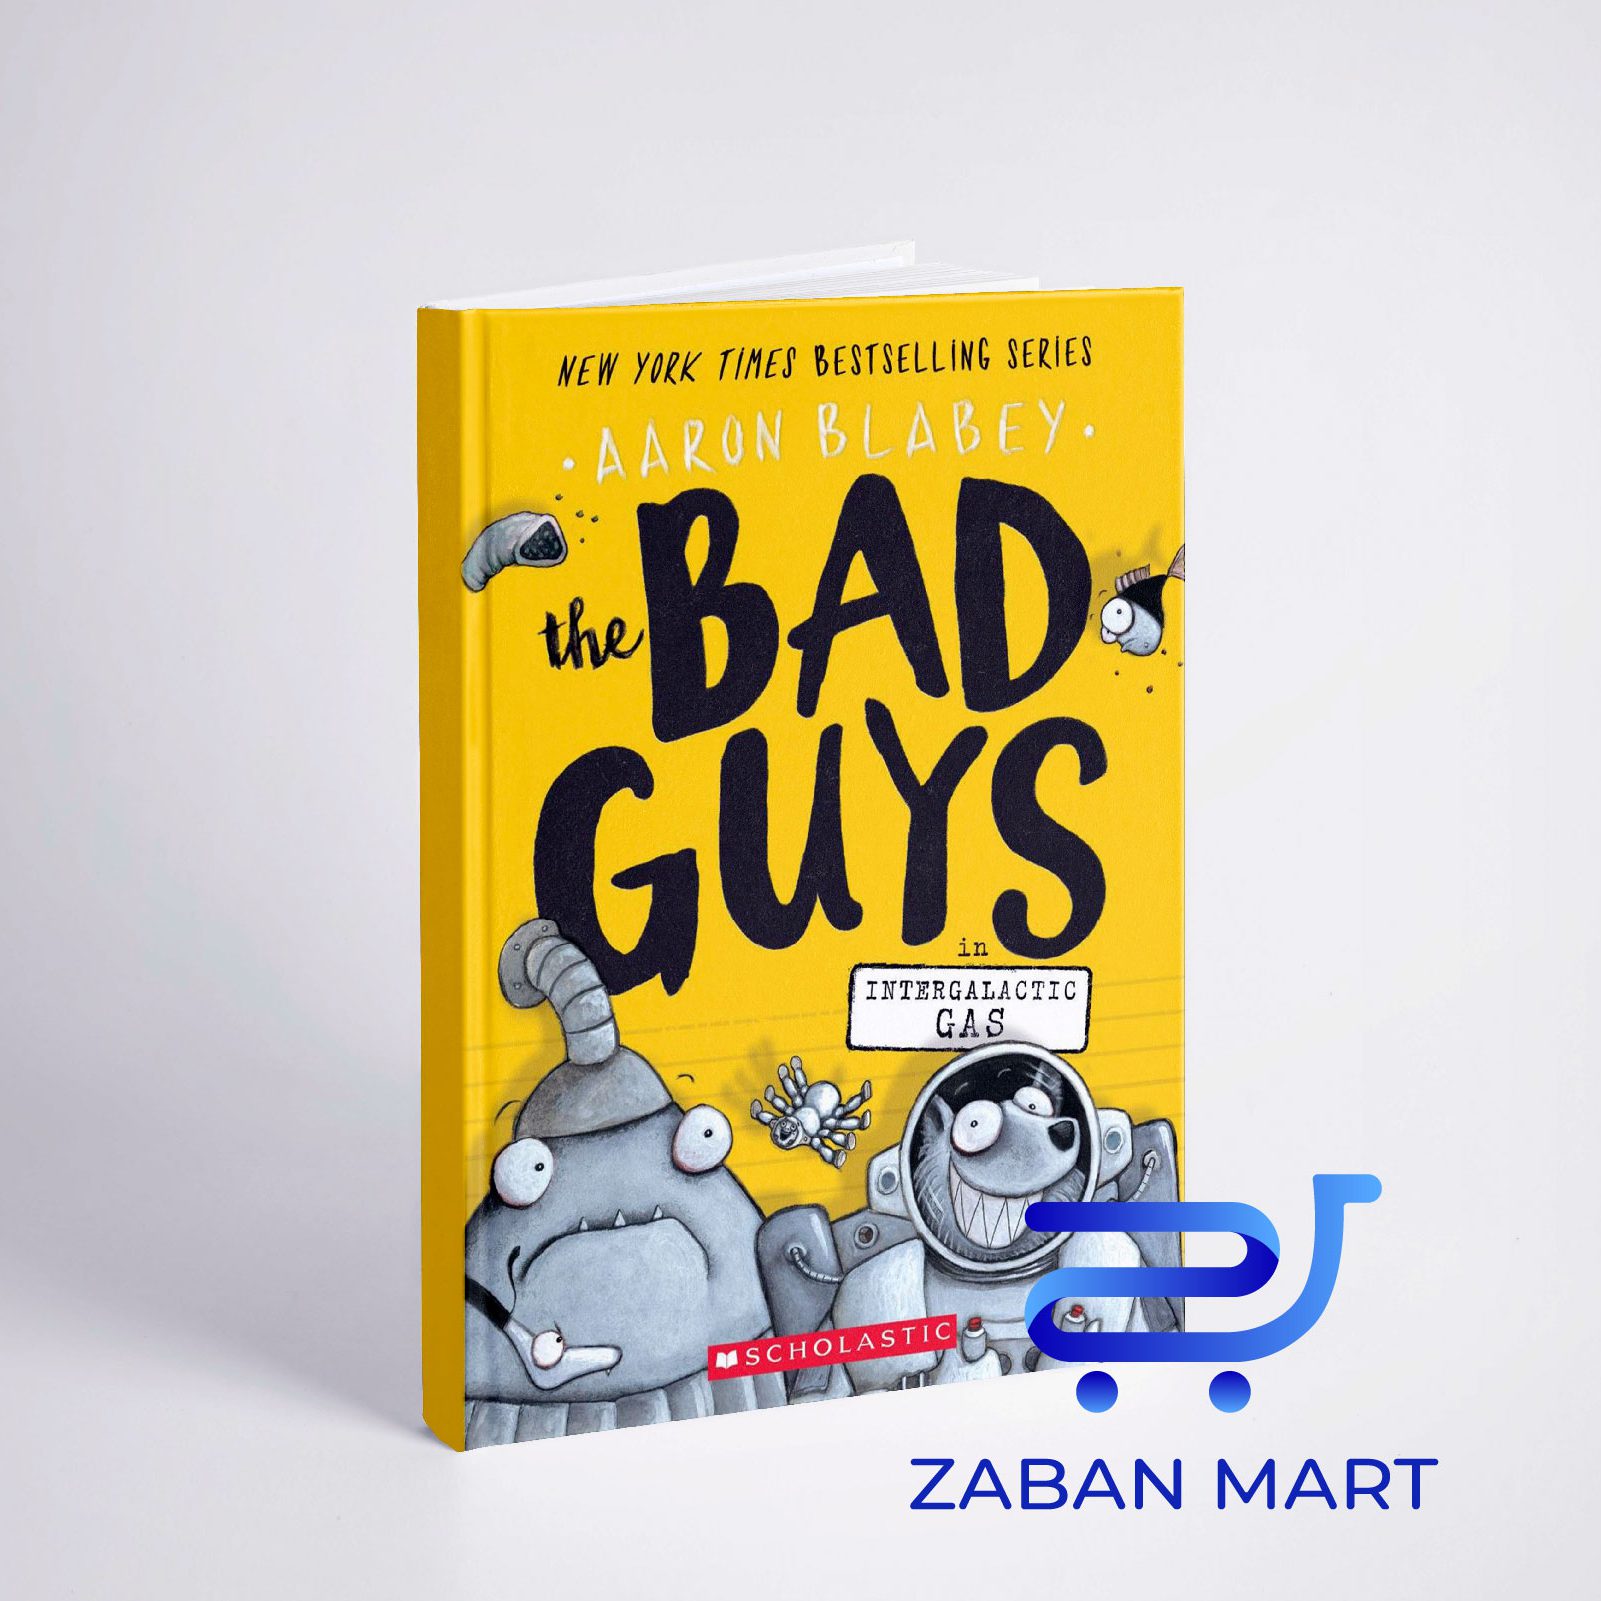 خرید کتاب The Bad Guys in Intergalactic Gas (The Bad Guys #5) از فروشگاه اینترنتی زبان مارت